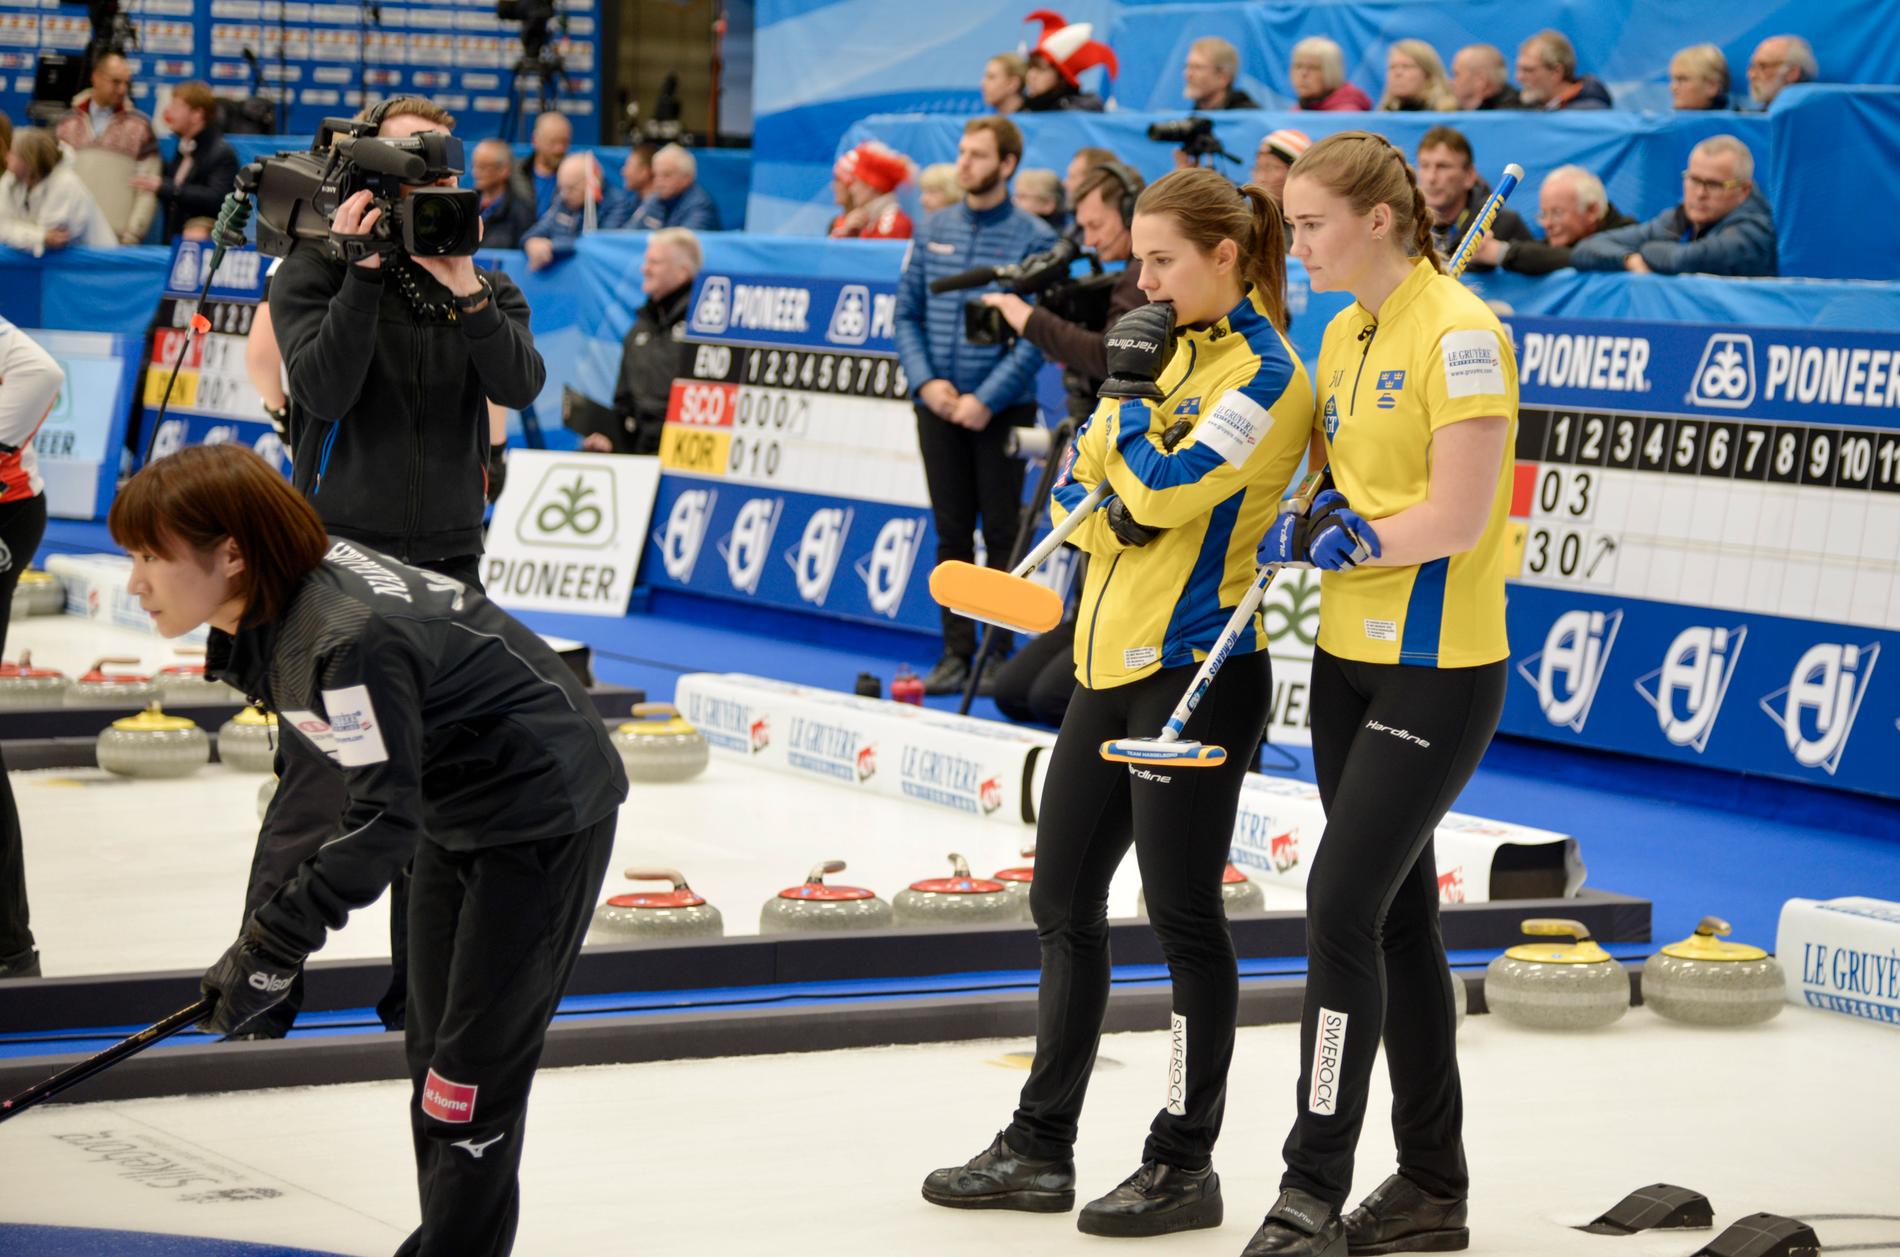 Den svenska skippern Anna Hasselborg och trean Sara McManus slog Japan i går i grundserieavslutningen av curling-VM i Danmark. I kväll väntar japanskorna igen i semifinal.